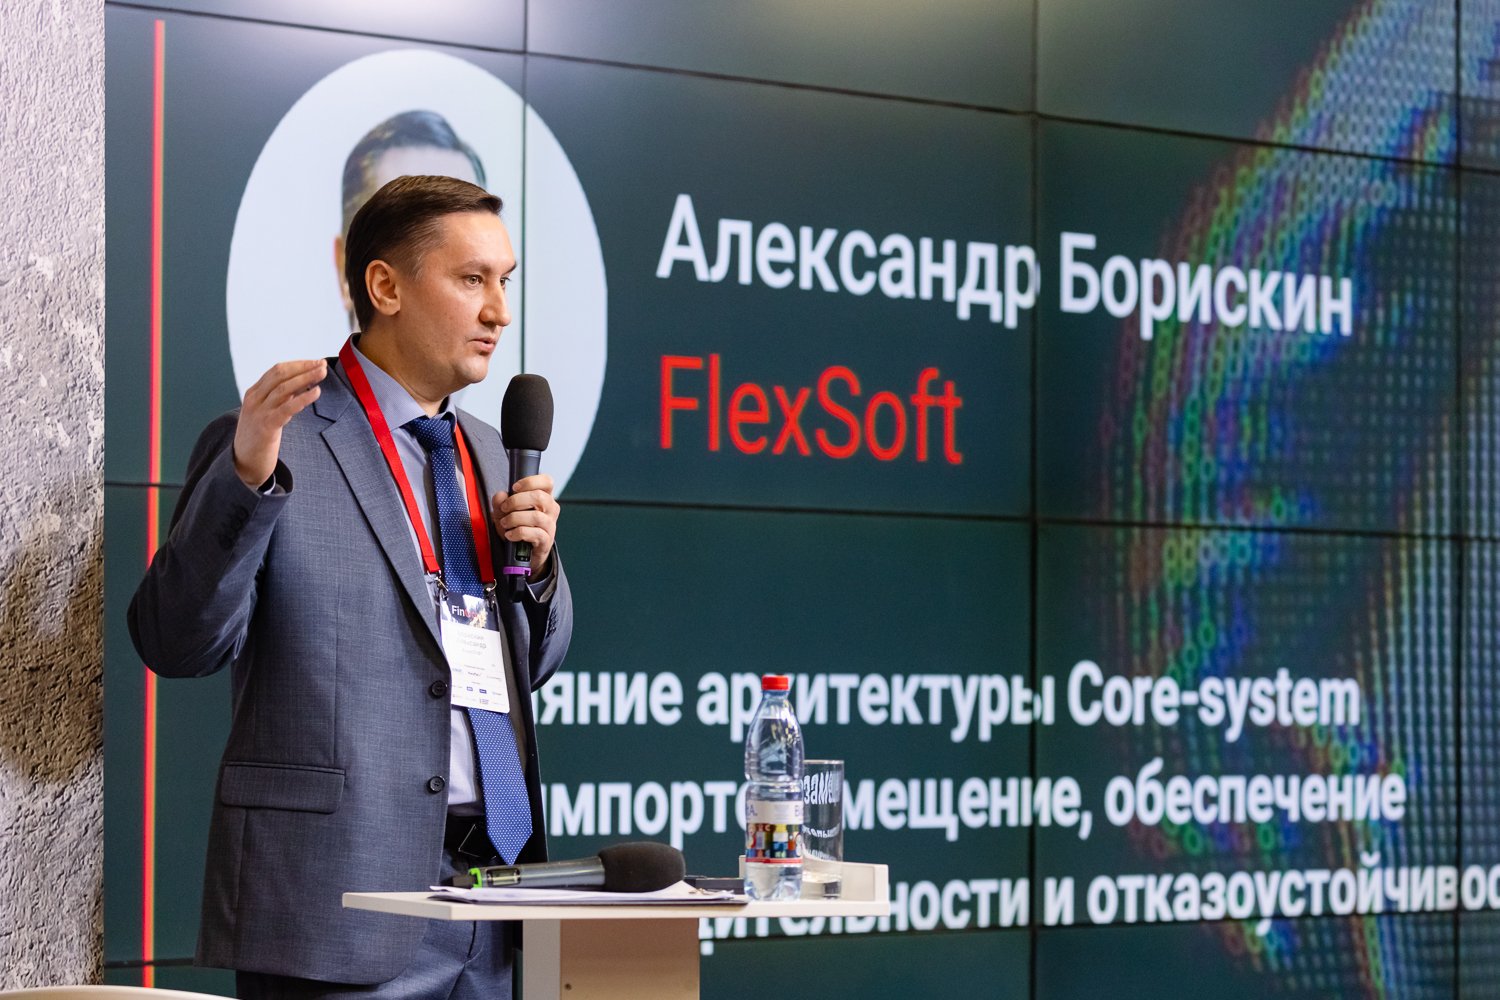 ФлексСофт рассказал, какая архитектура core-banking обеспечит производительность и отказоустойчивость при импортозамещении технологий